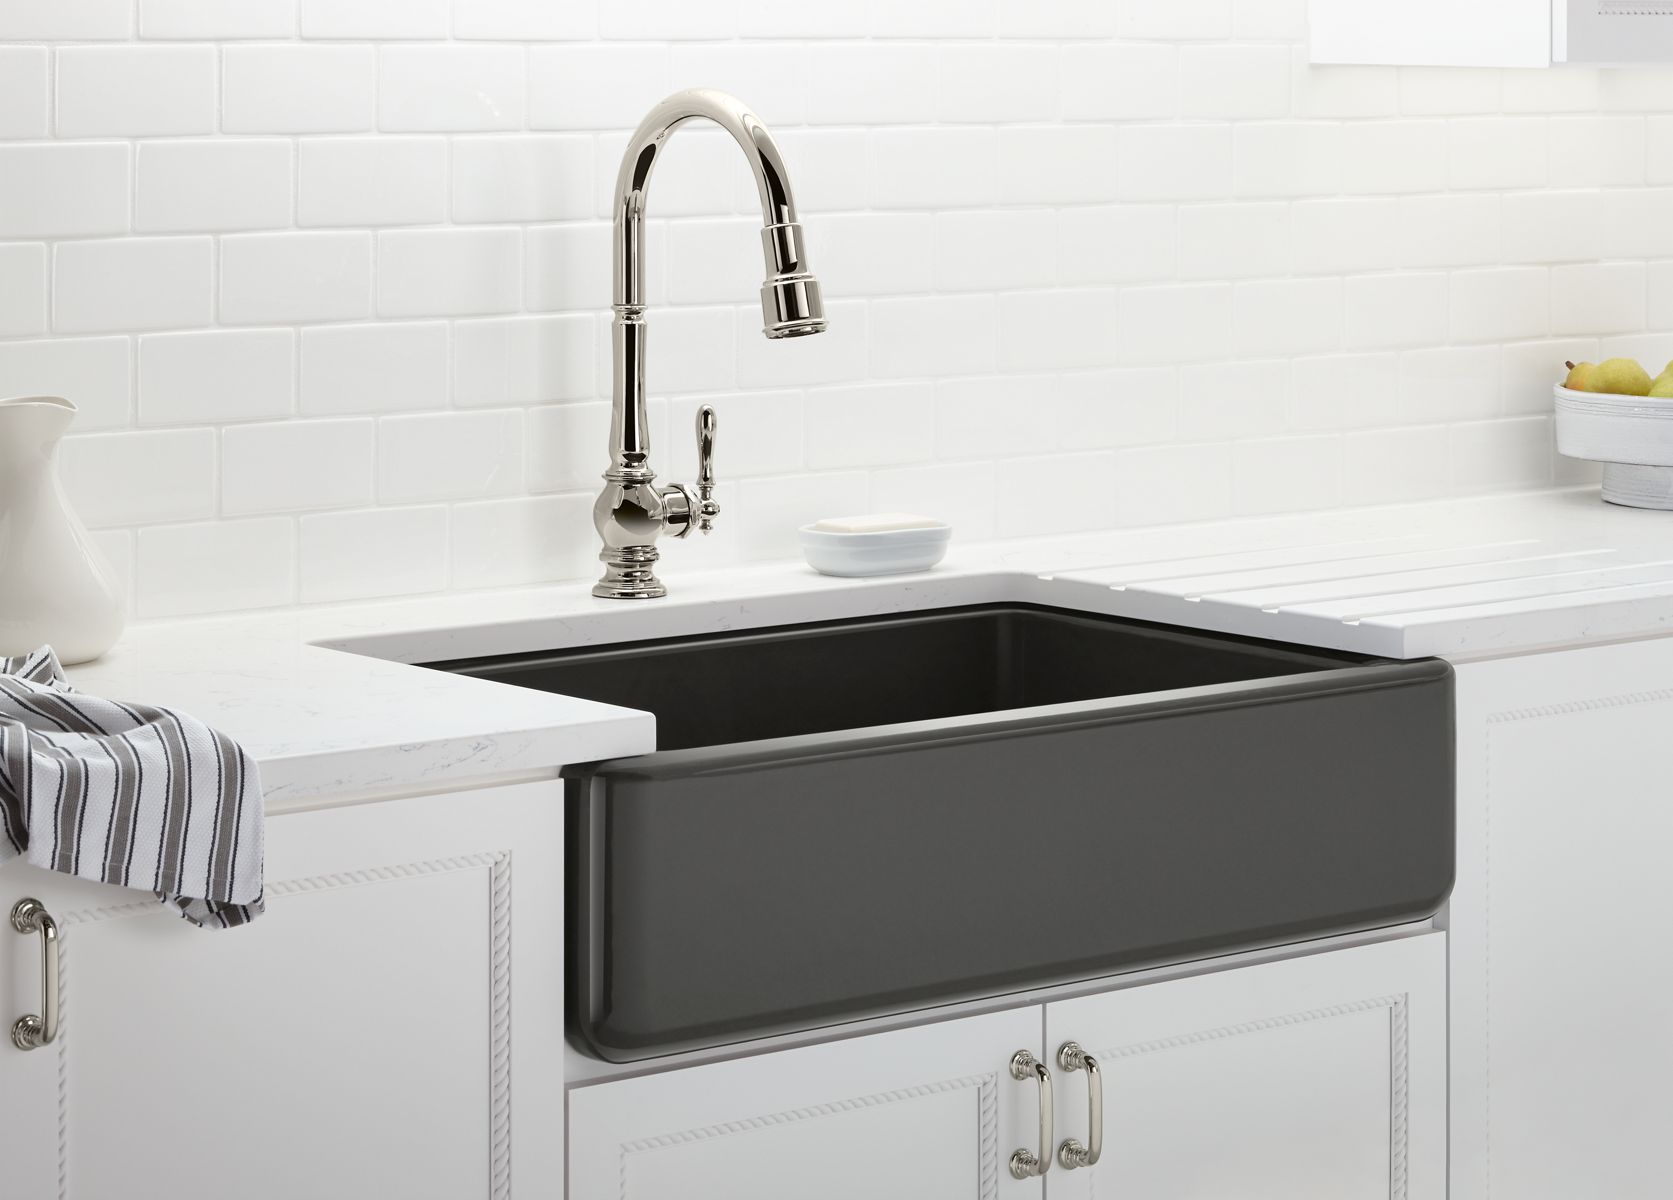 cast iron enameled white kitchen sink